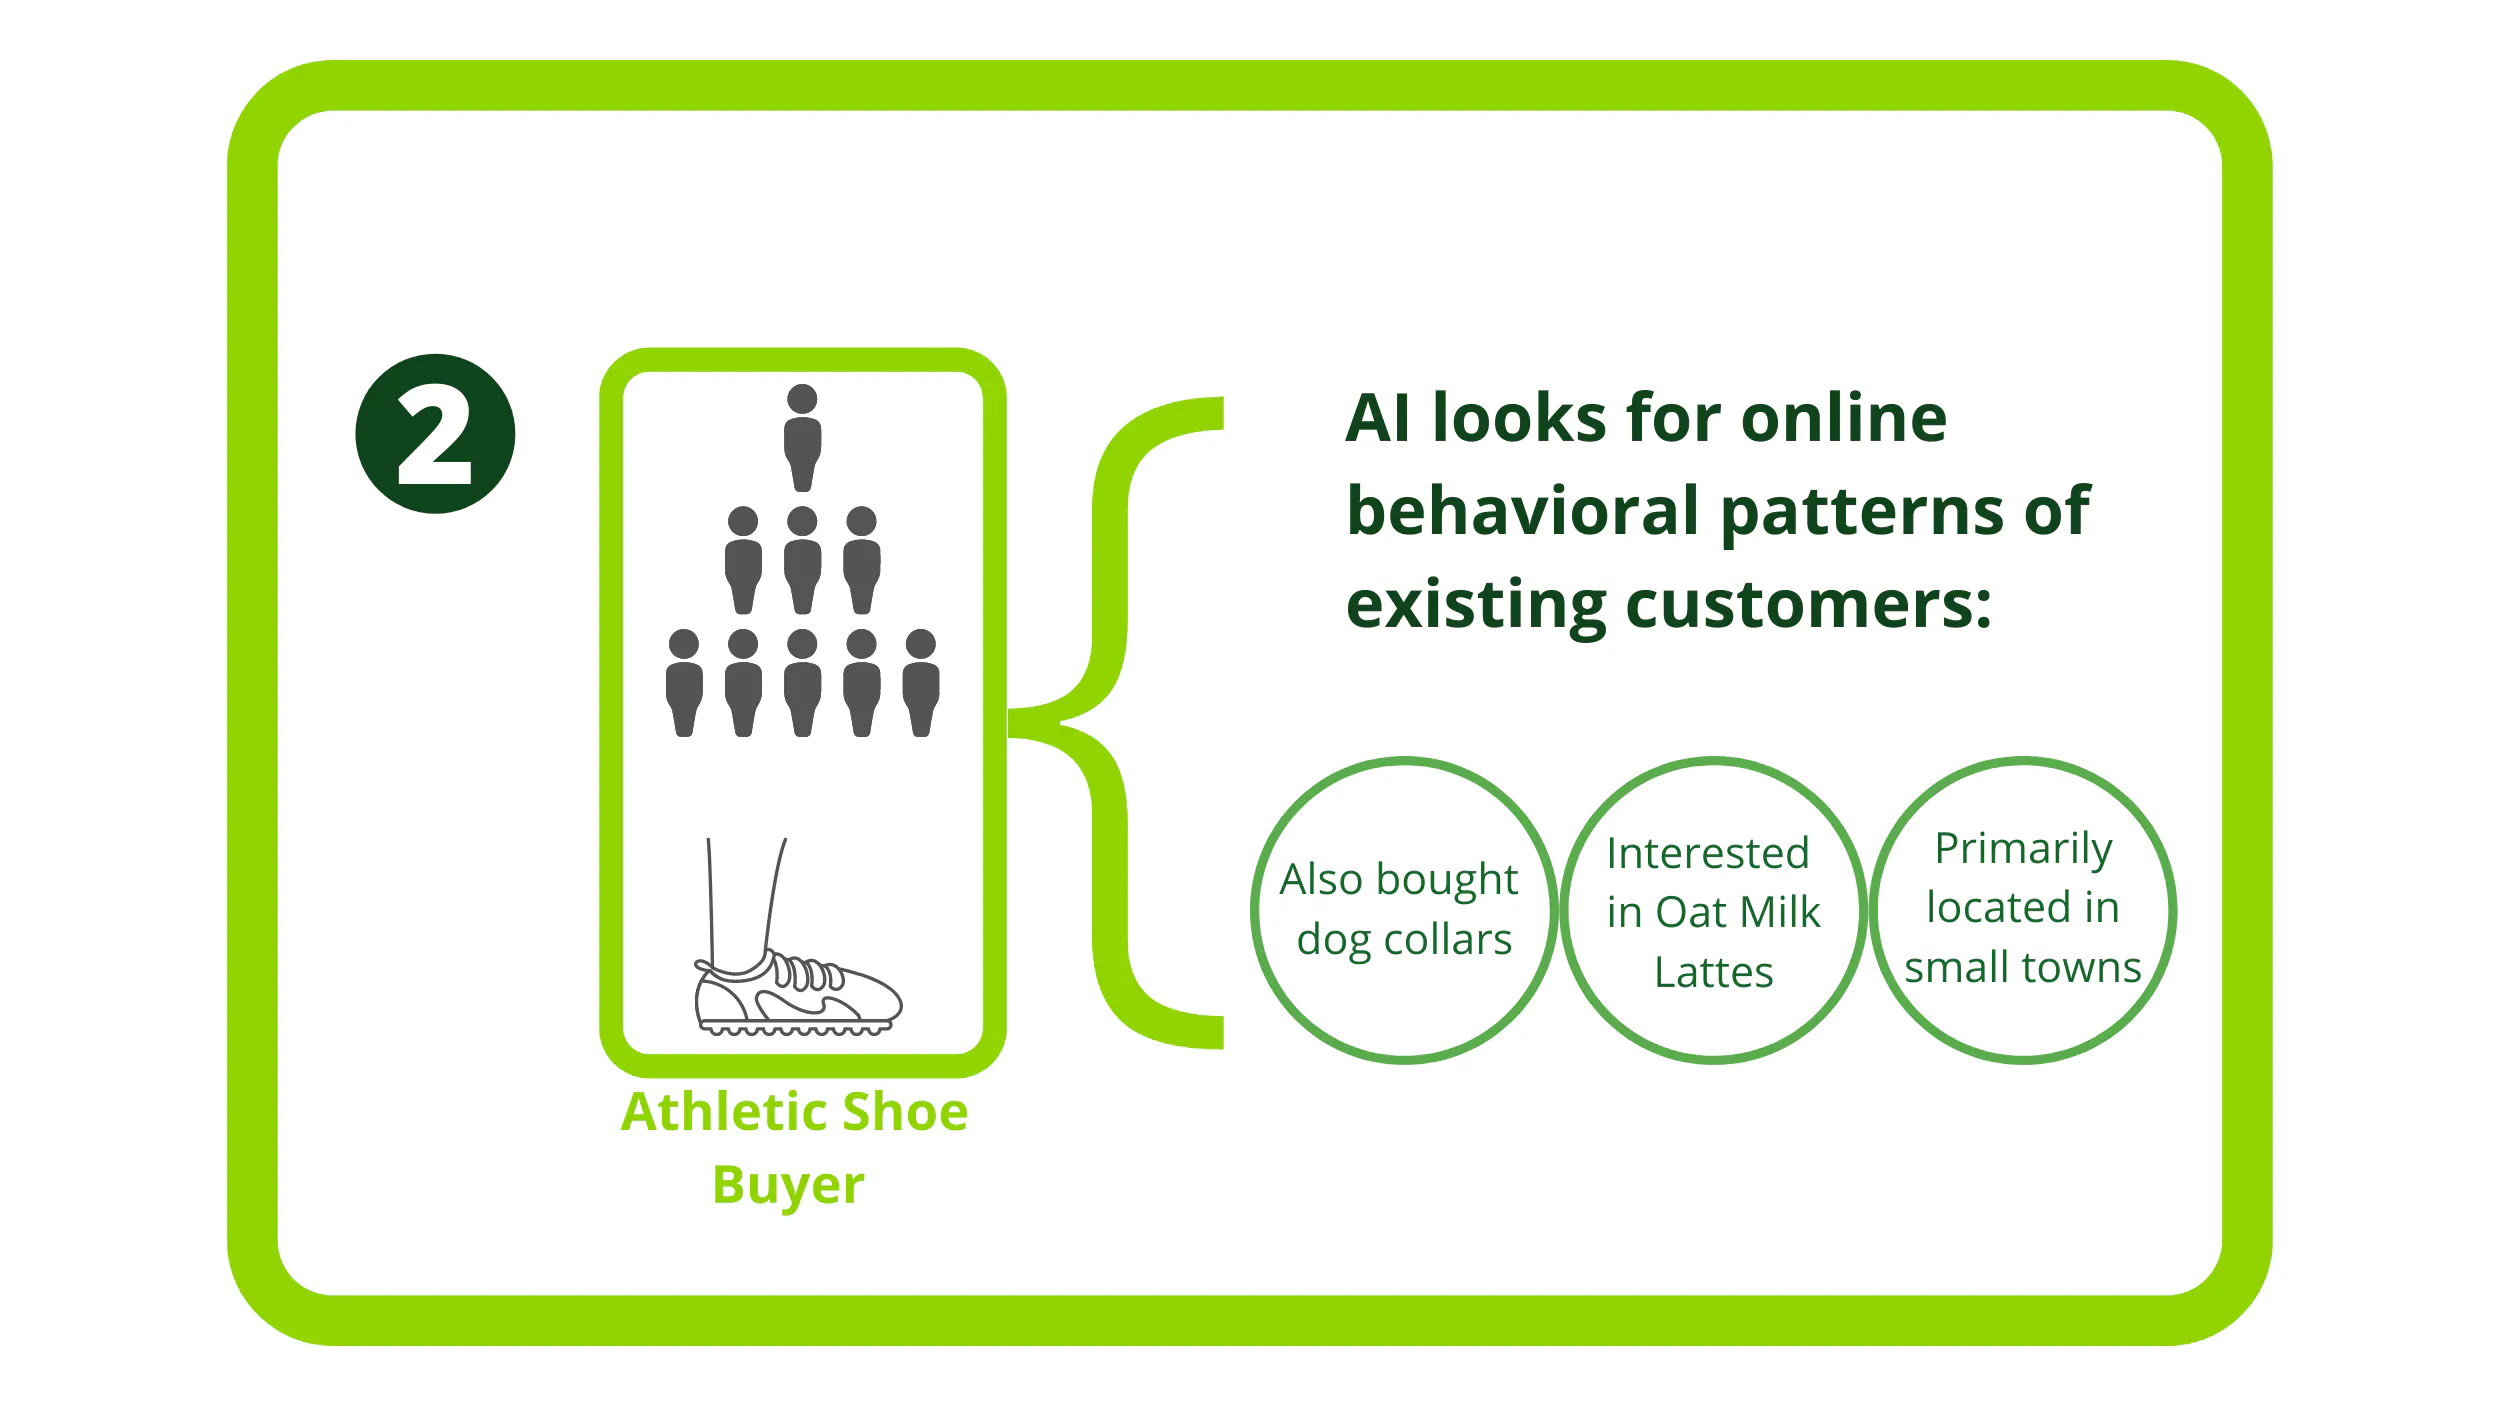 L'AI cerca i modelli comportamentali online dei clienti esistenti per gli acquirenti di scarpe sportive